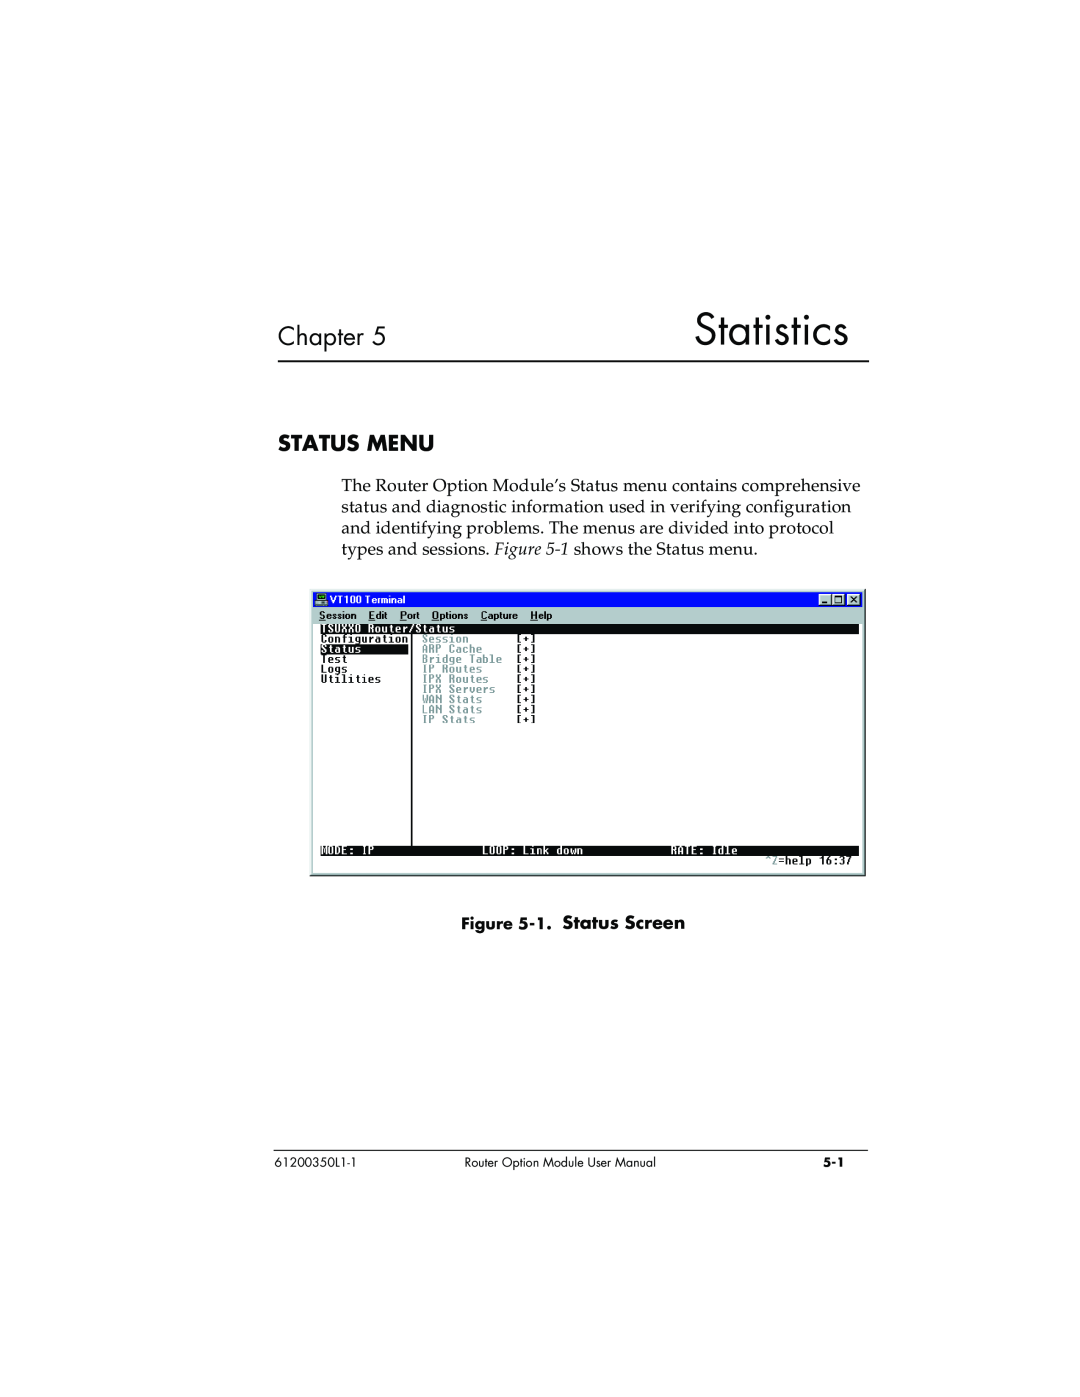 ADTRAN user manual Statistics, Status Menu, 1. Status Screen, Chapter, 61200350L1-1, Router Option Module User Manual 